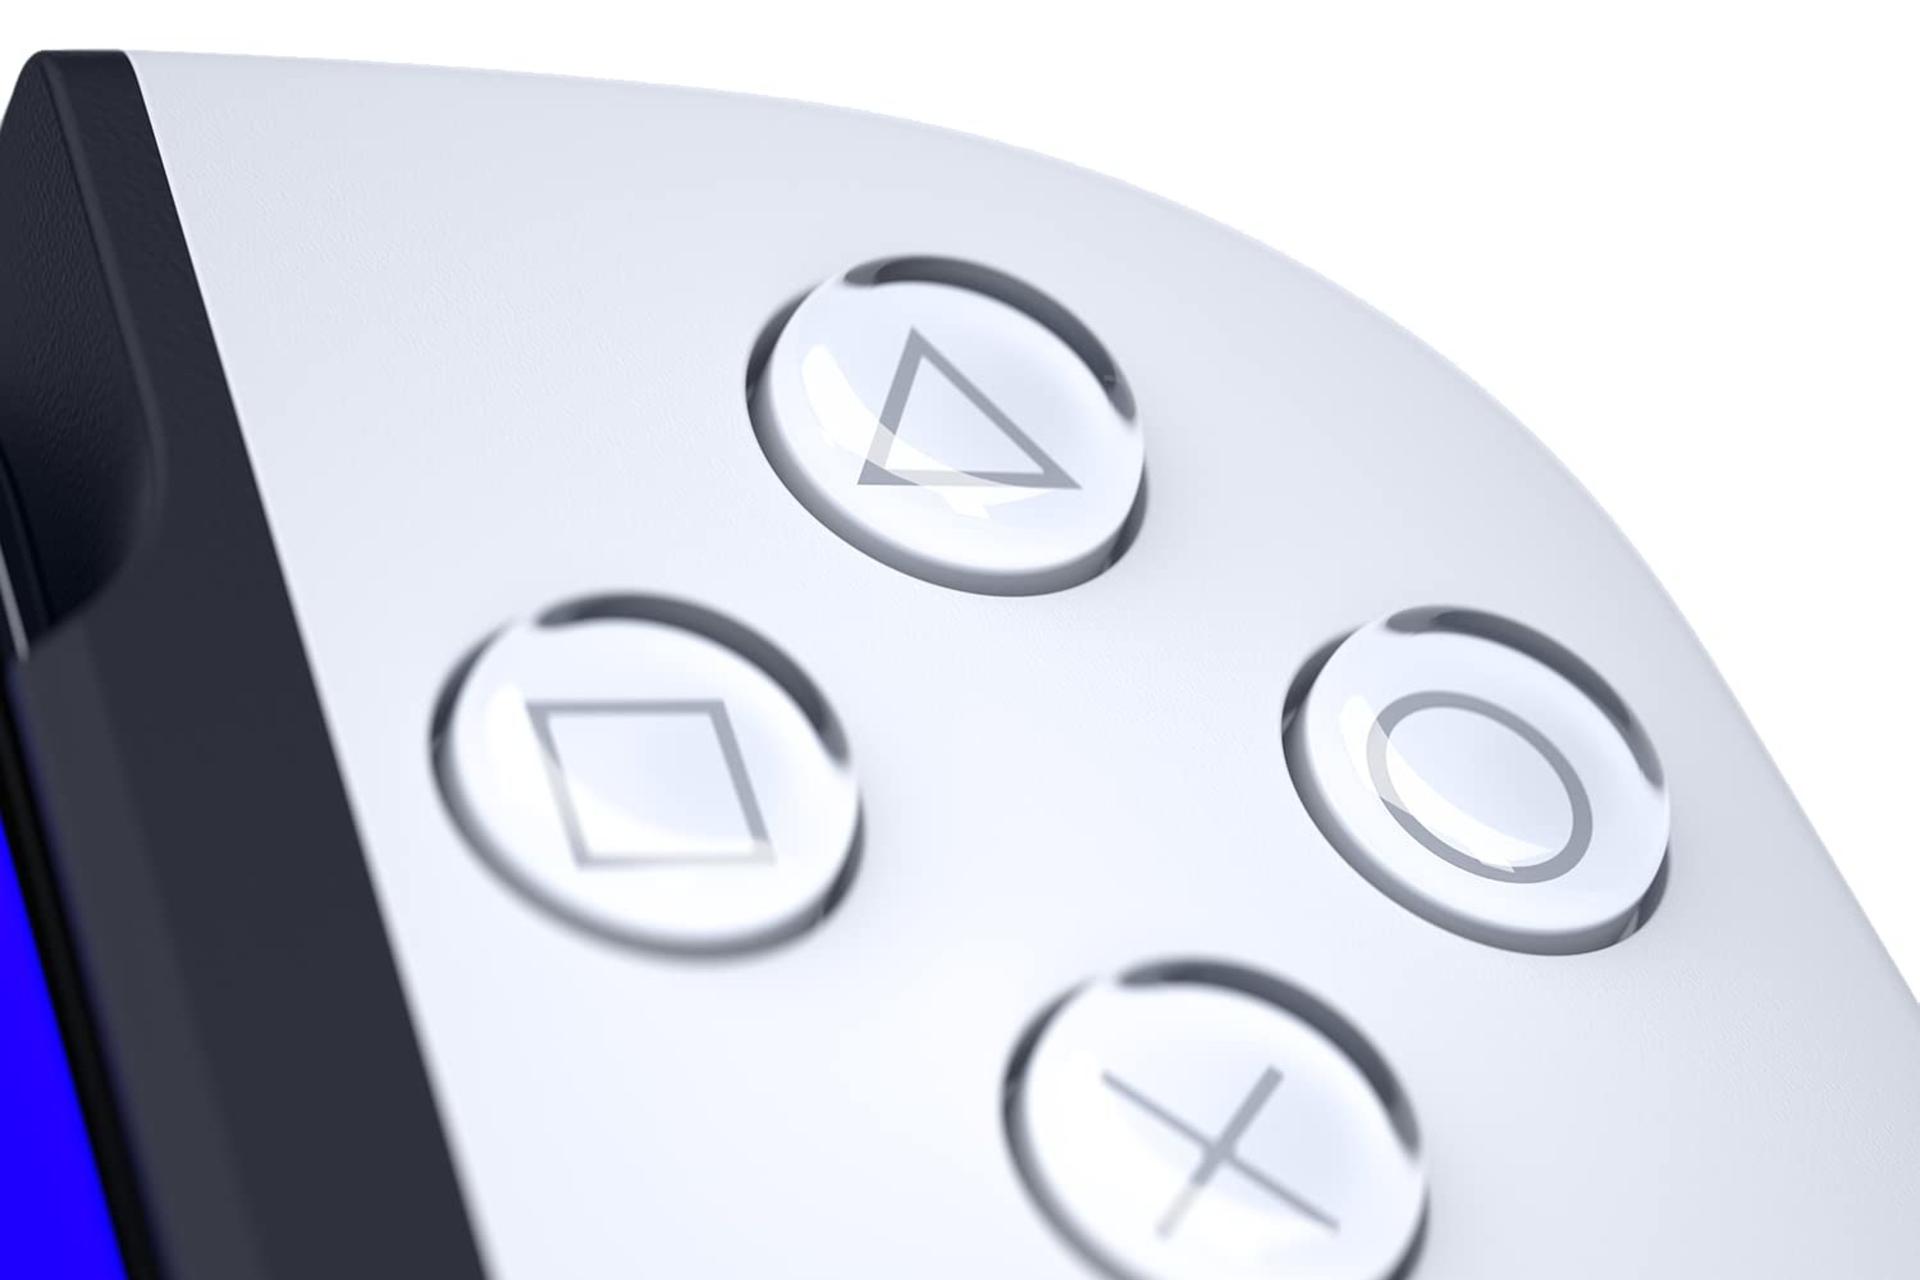 دکمه های دسته بازی بک بون نسخه پلی استیشن Backbone One for iPhone PlayStation Edition